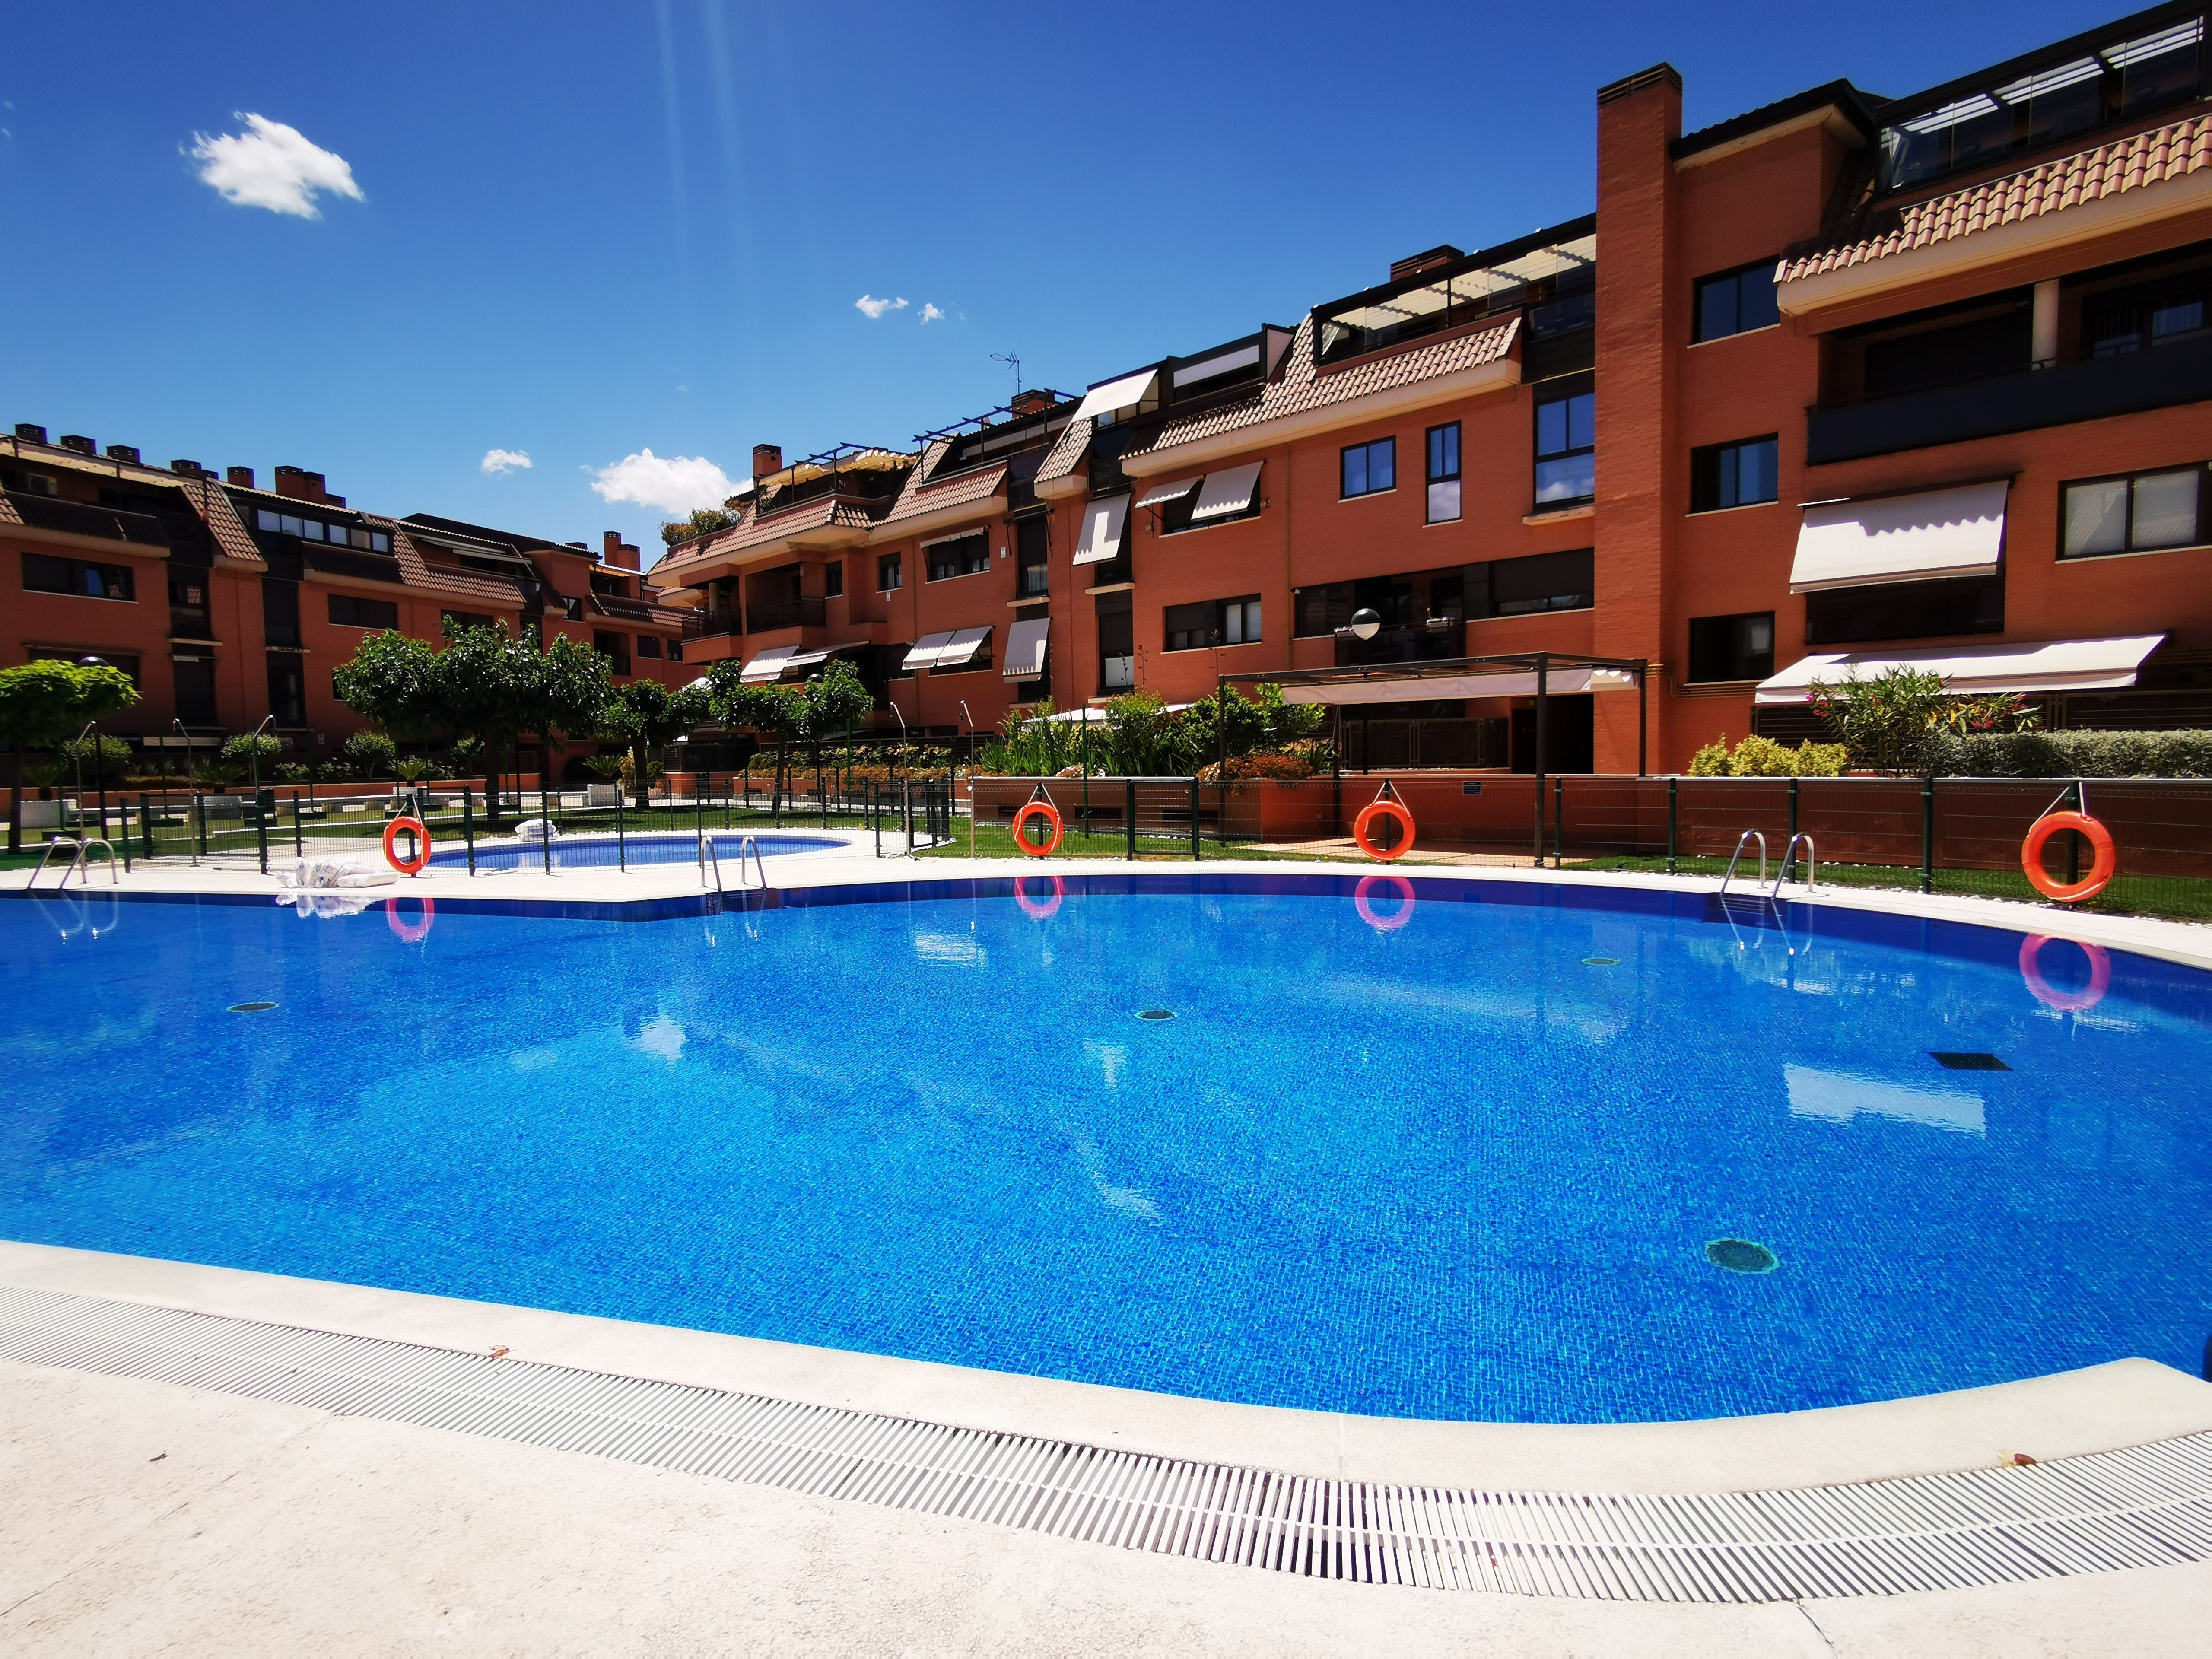 61 Pisos de alquiler con piscina Las Rozas Madrid página 2 | fotocasa